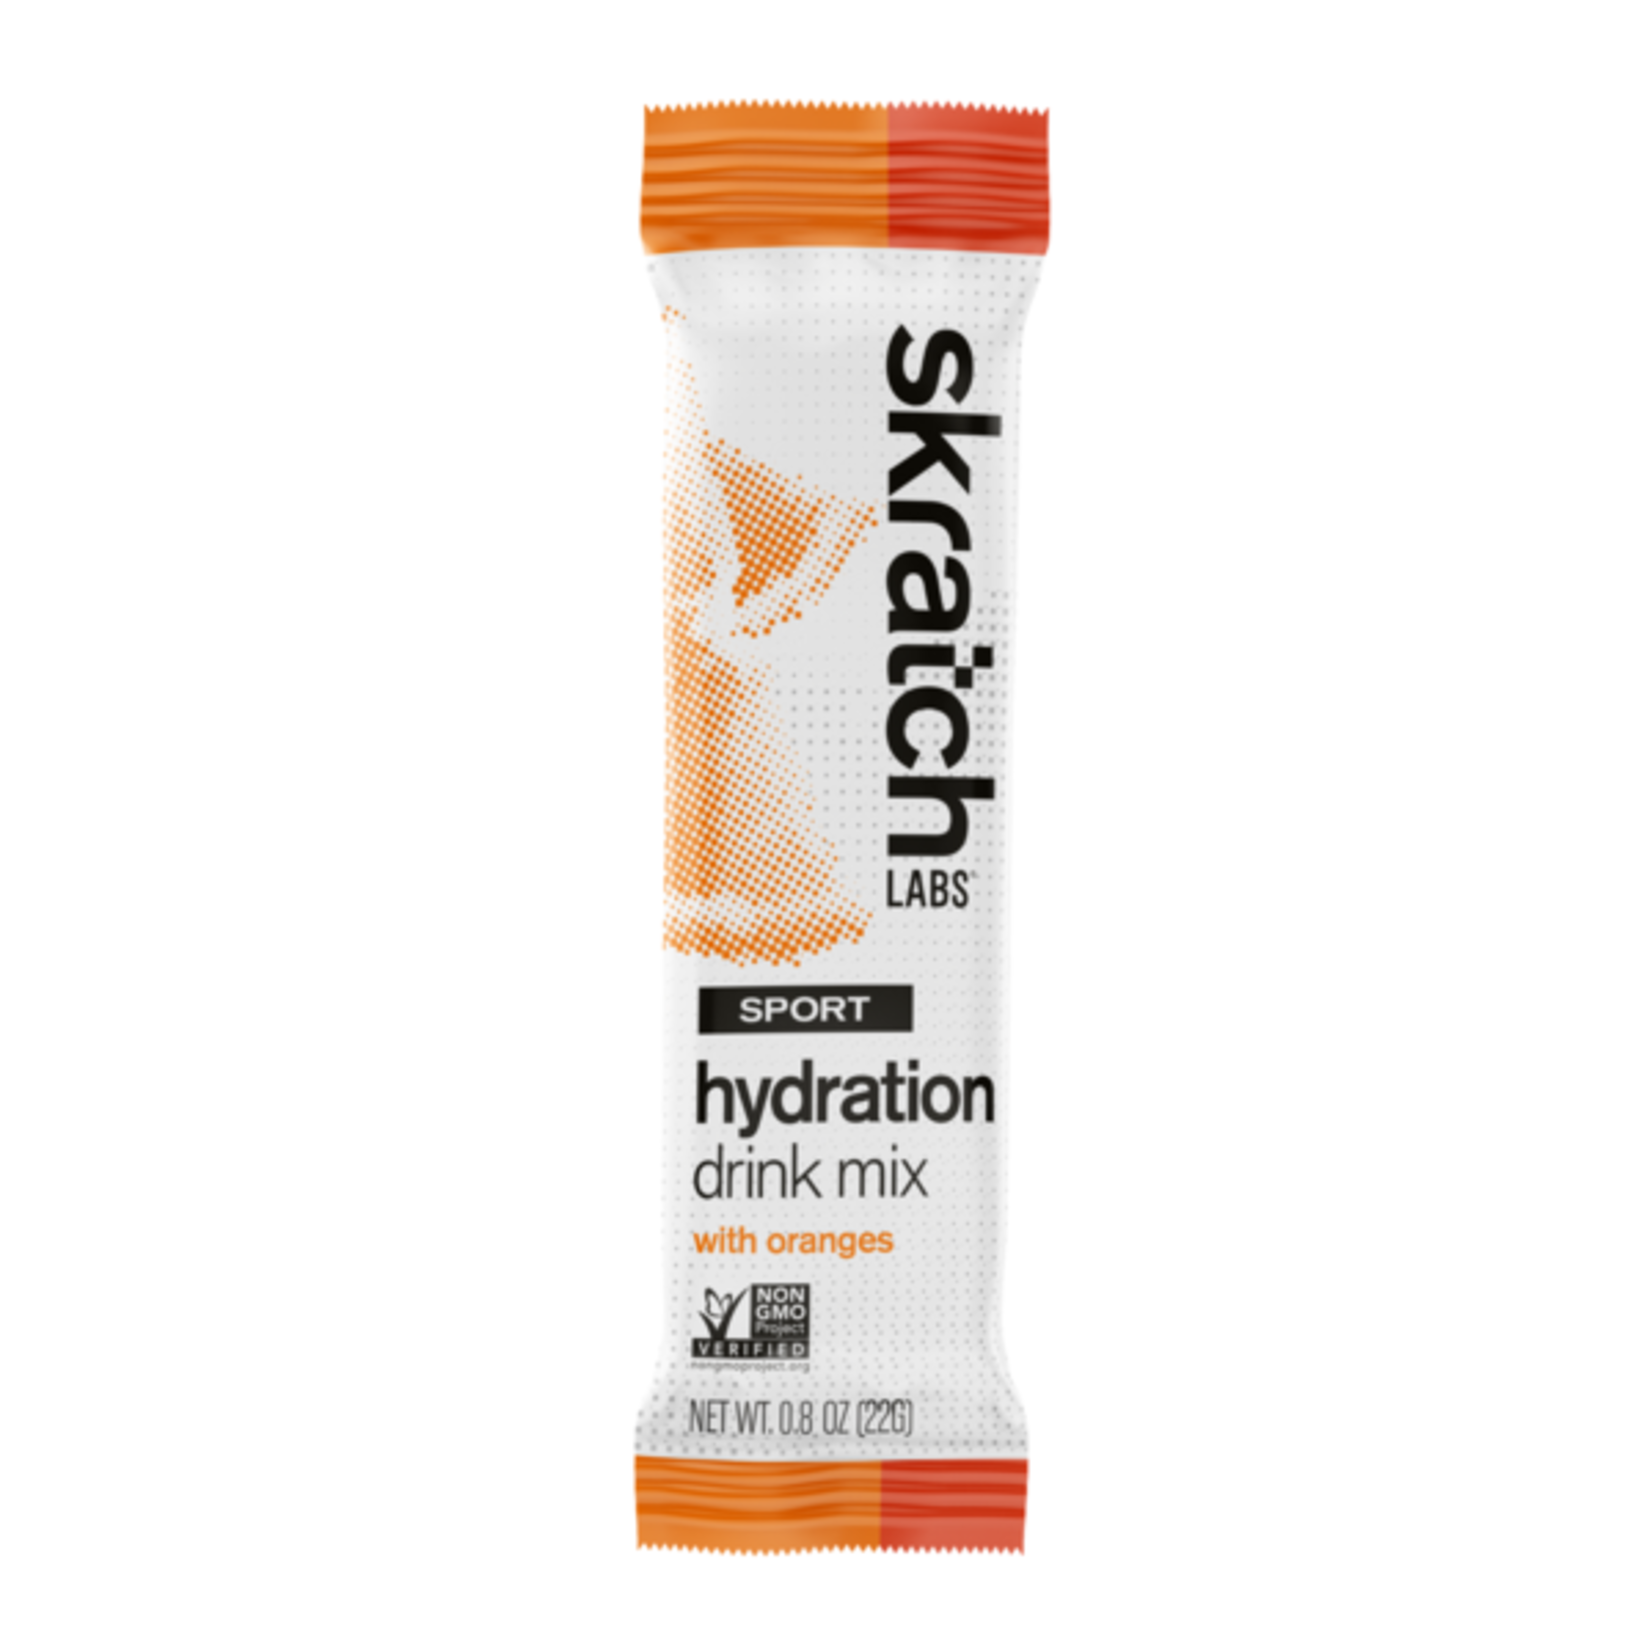 Skratch Labs Mélange de boisson d’hydratation pour sports: Oranges (Sachet)